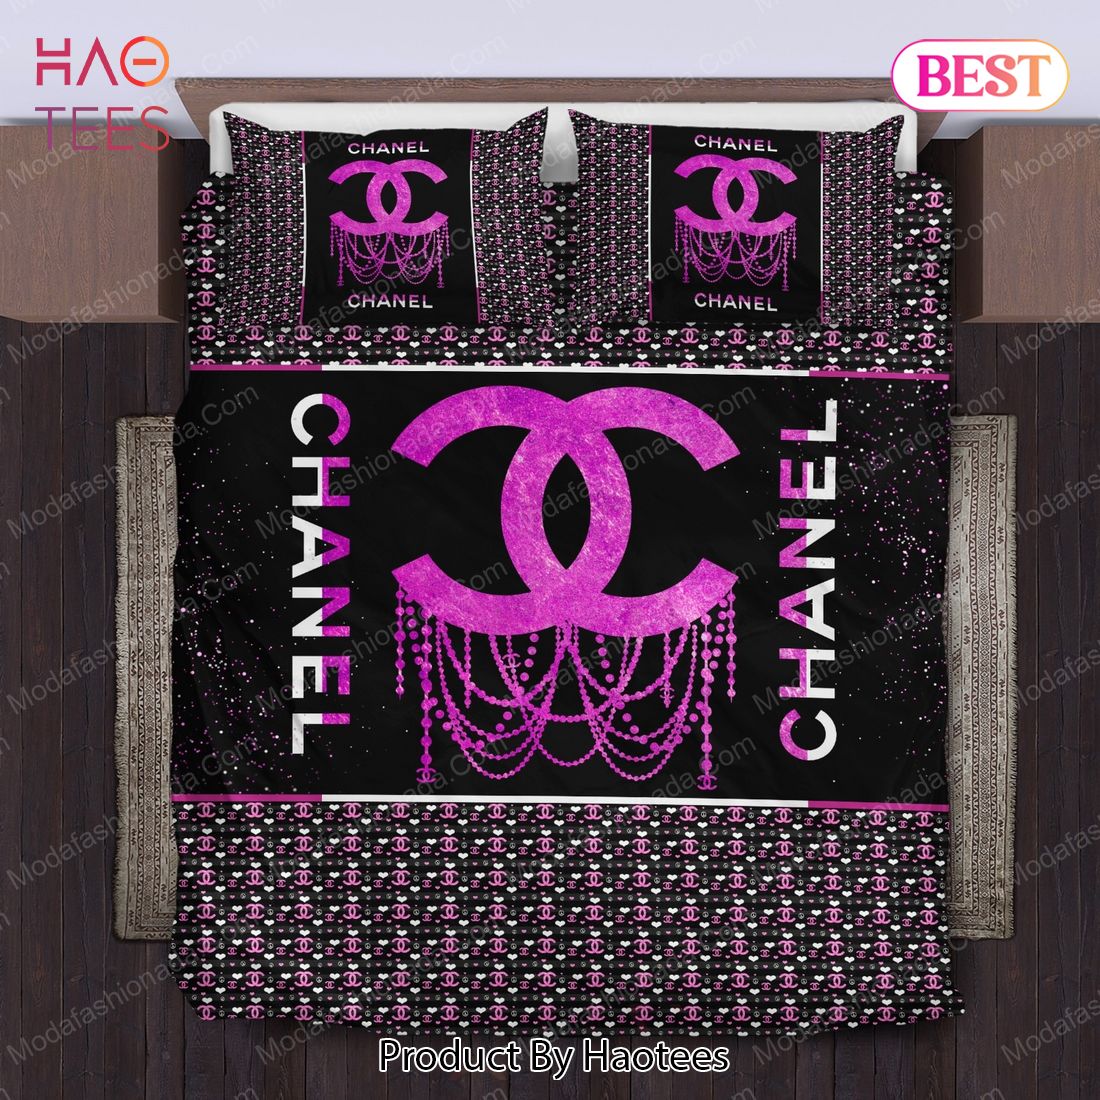 Buy Coco Chanel Bedding Sets Bed Sets, Bedroom Sets, Comforter Sets, Duvet Cover, Bedspread